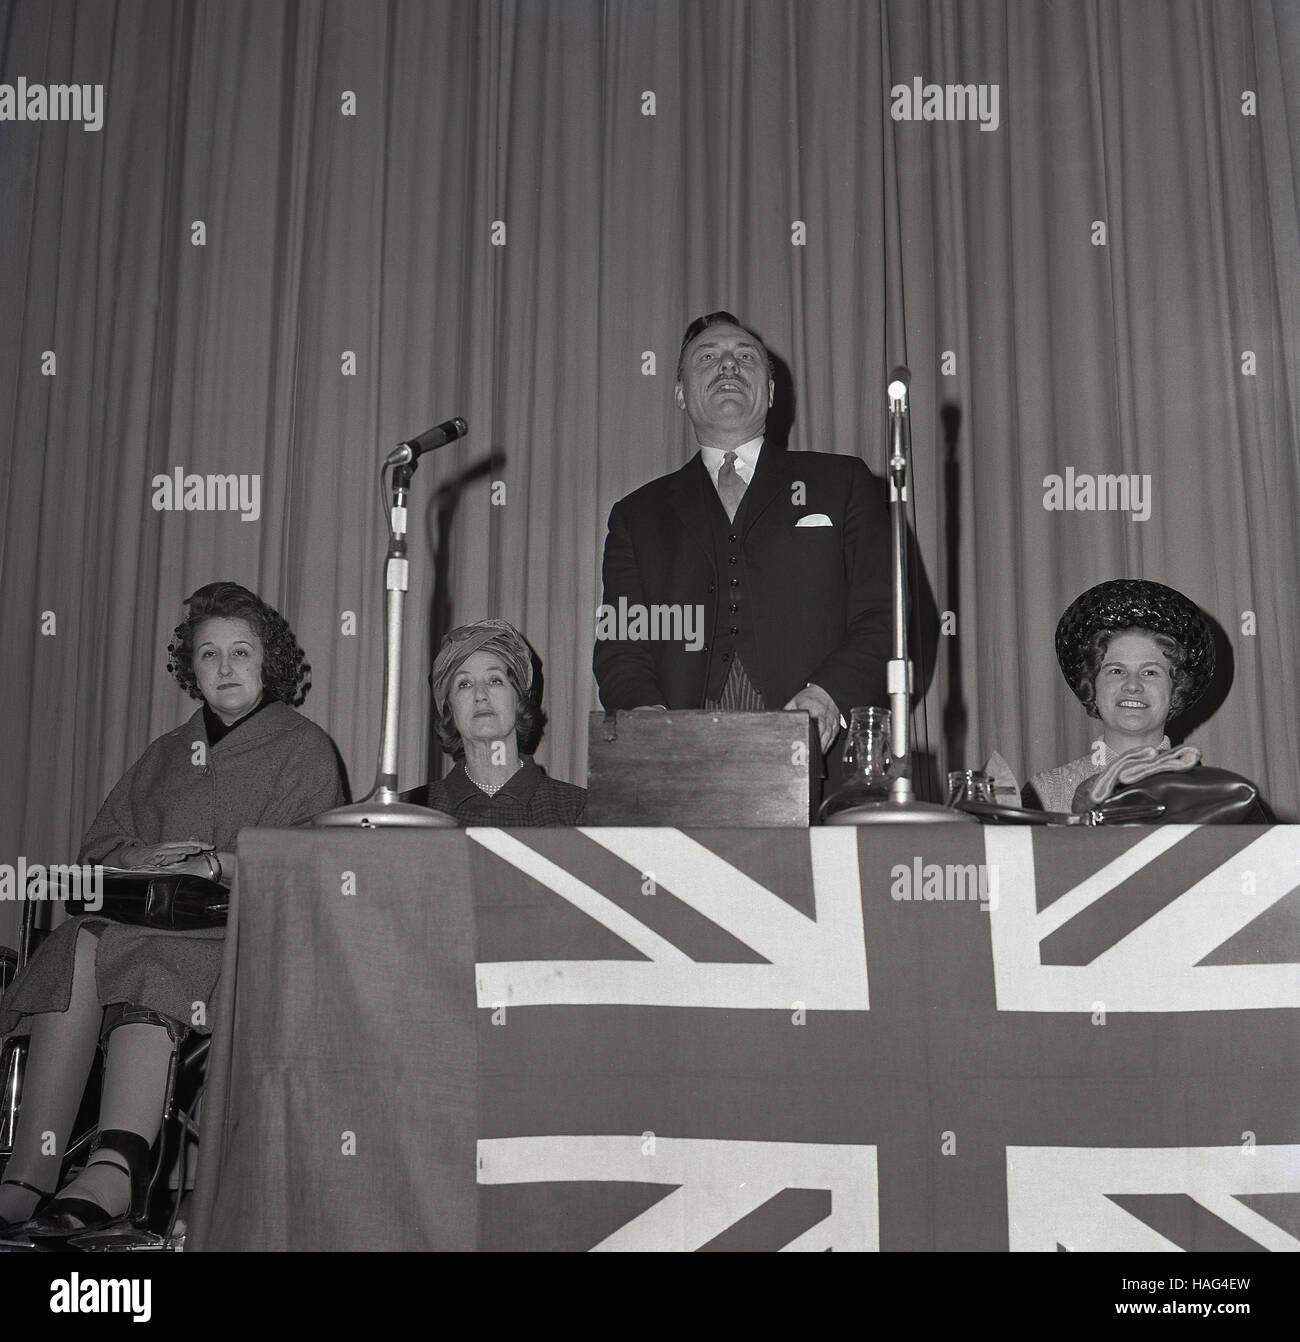 1965, storico, politico britannico Enoch Powell, con sua moglie accanto a lui, facendo un discorso al gruppo di Borough Hall, Aylesbury, Bucks, Inghilterra. Foto Stock